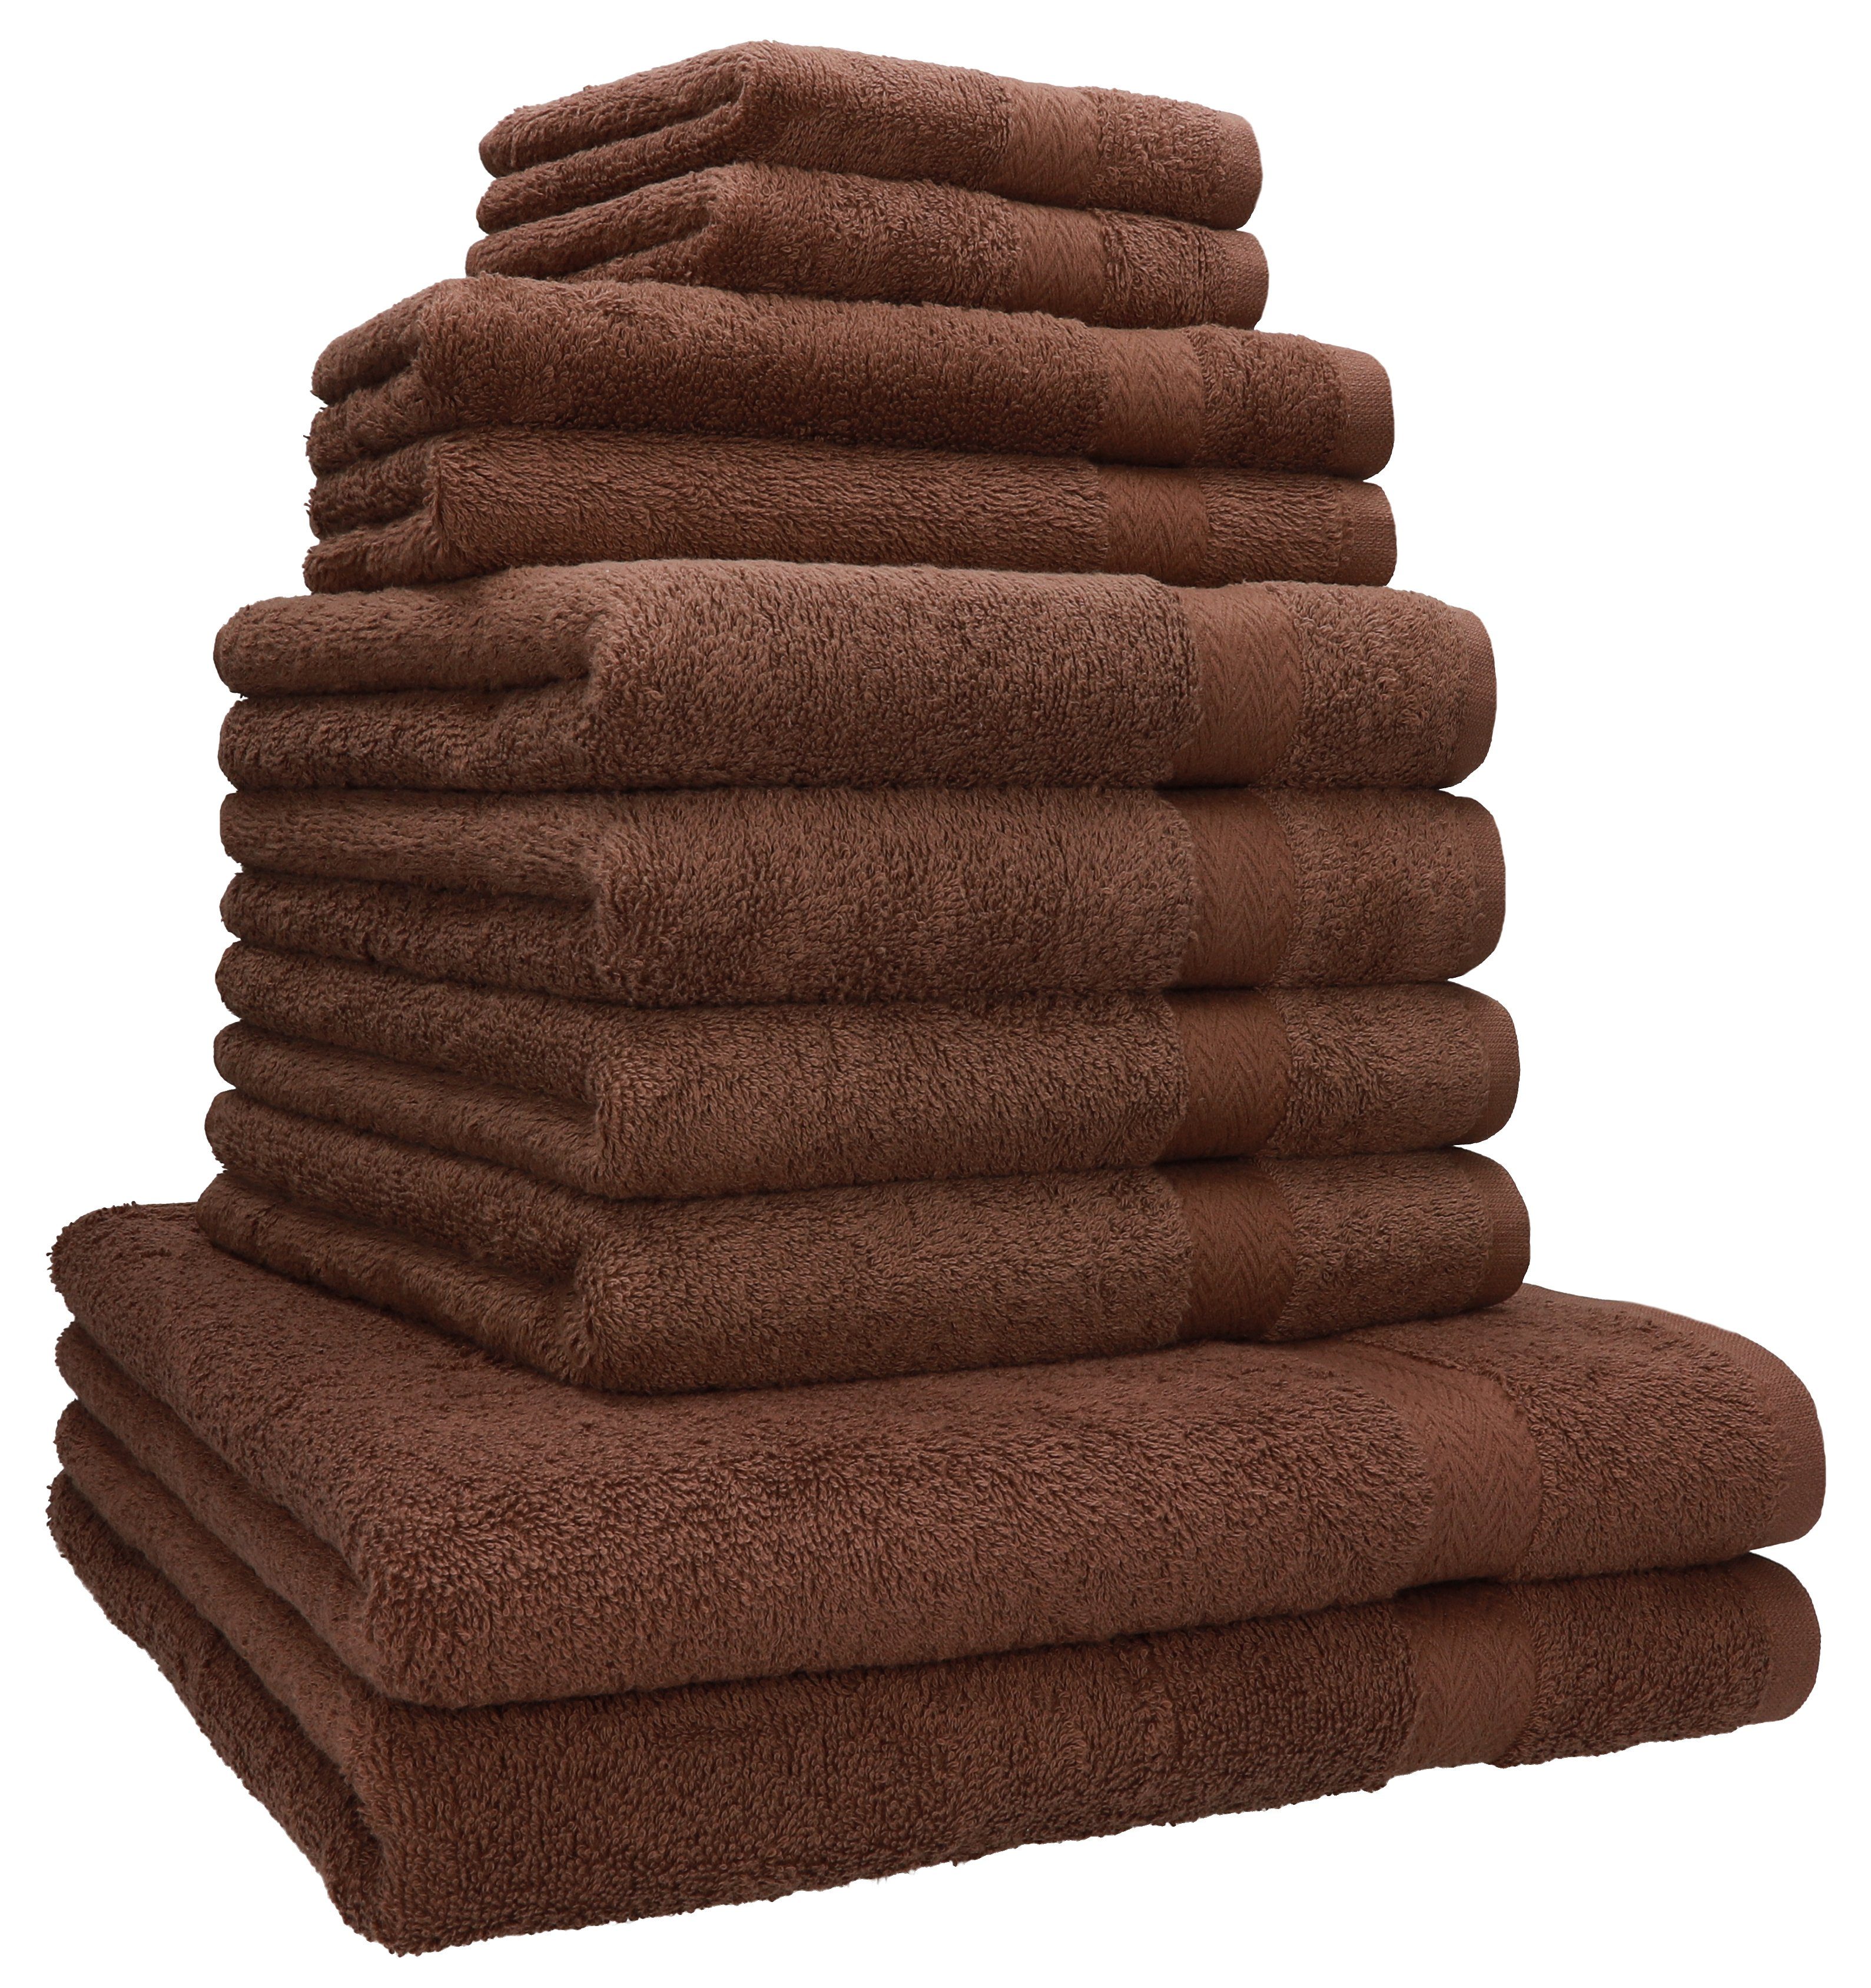 Baumwolle, 4 10-TLG. Handtuch (10-tlg) Set Betz nuss Seiftücher, Gästetücher 100% Handtuch-Set 100% Duschtücher Baumwolle 2 2 Classic Handtücher 2